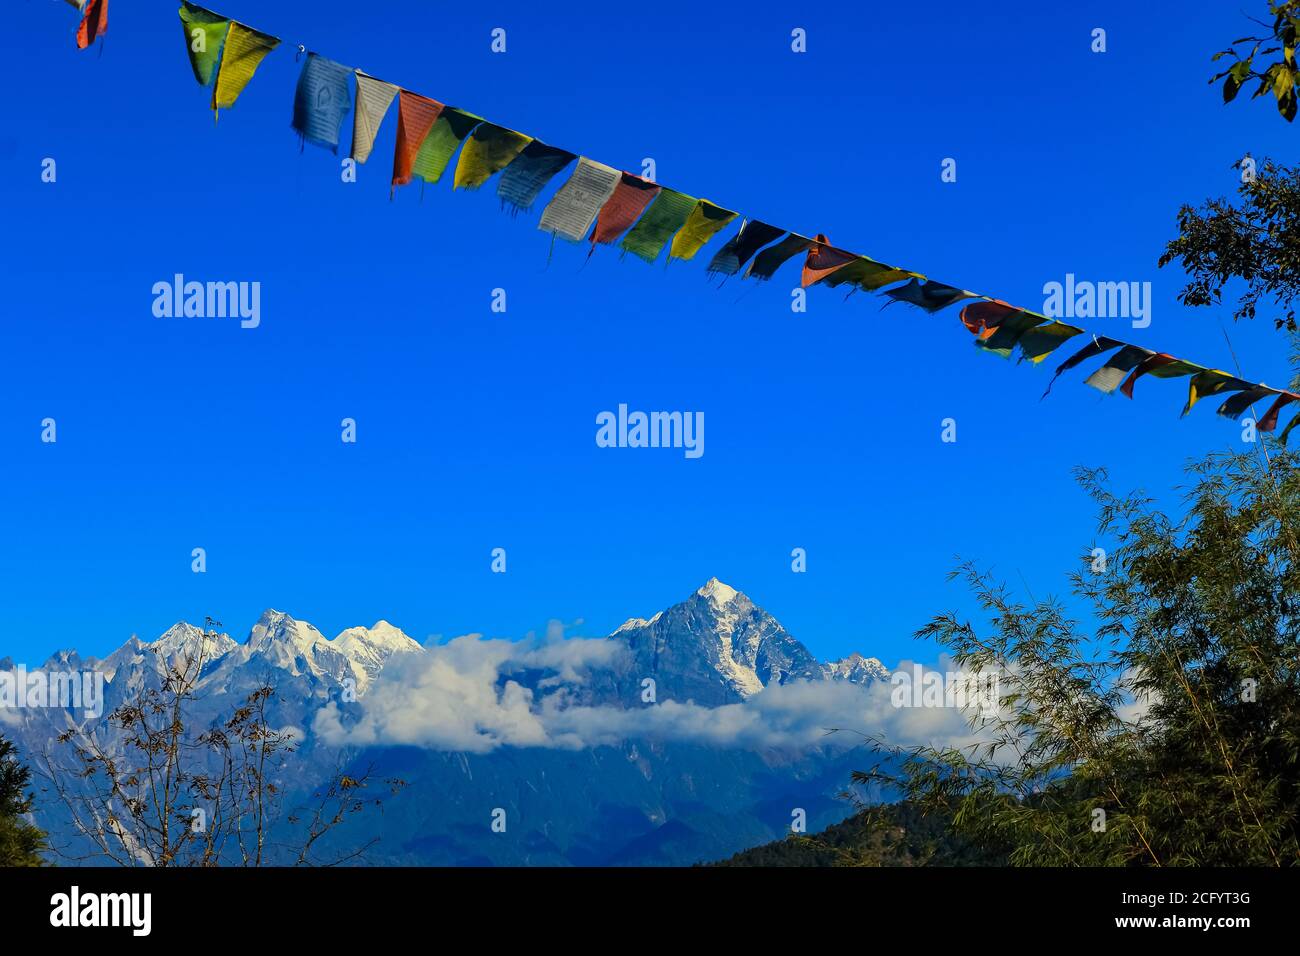 Drapeau de prière tibétain coloré avec des montagnes enneigées dans le L'arrière-plan est magnifique avec le paysage de Sikkim Inde Banque D'Images